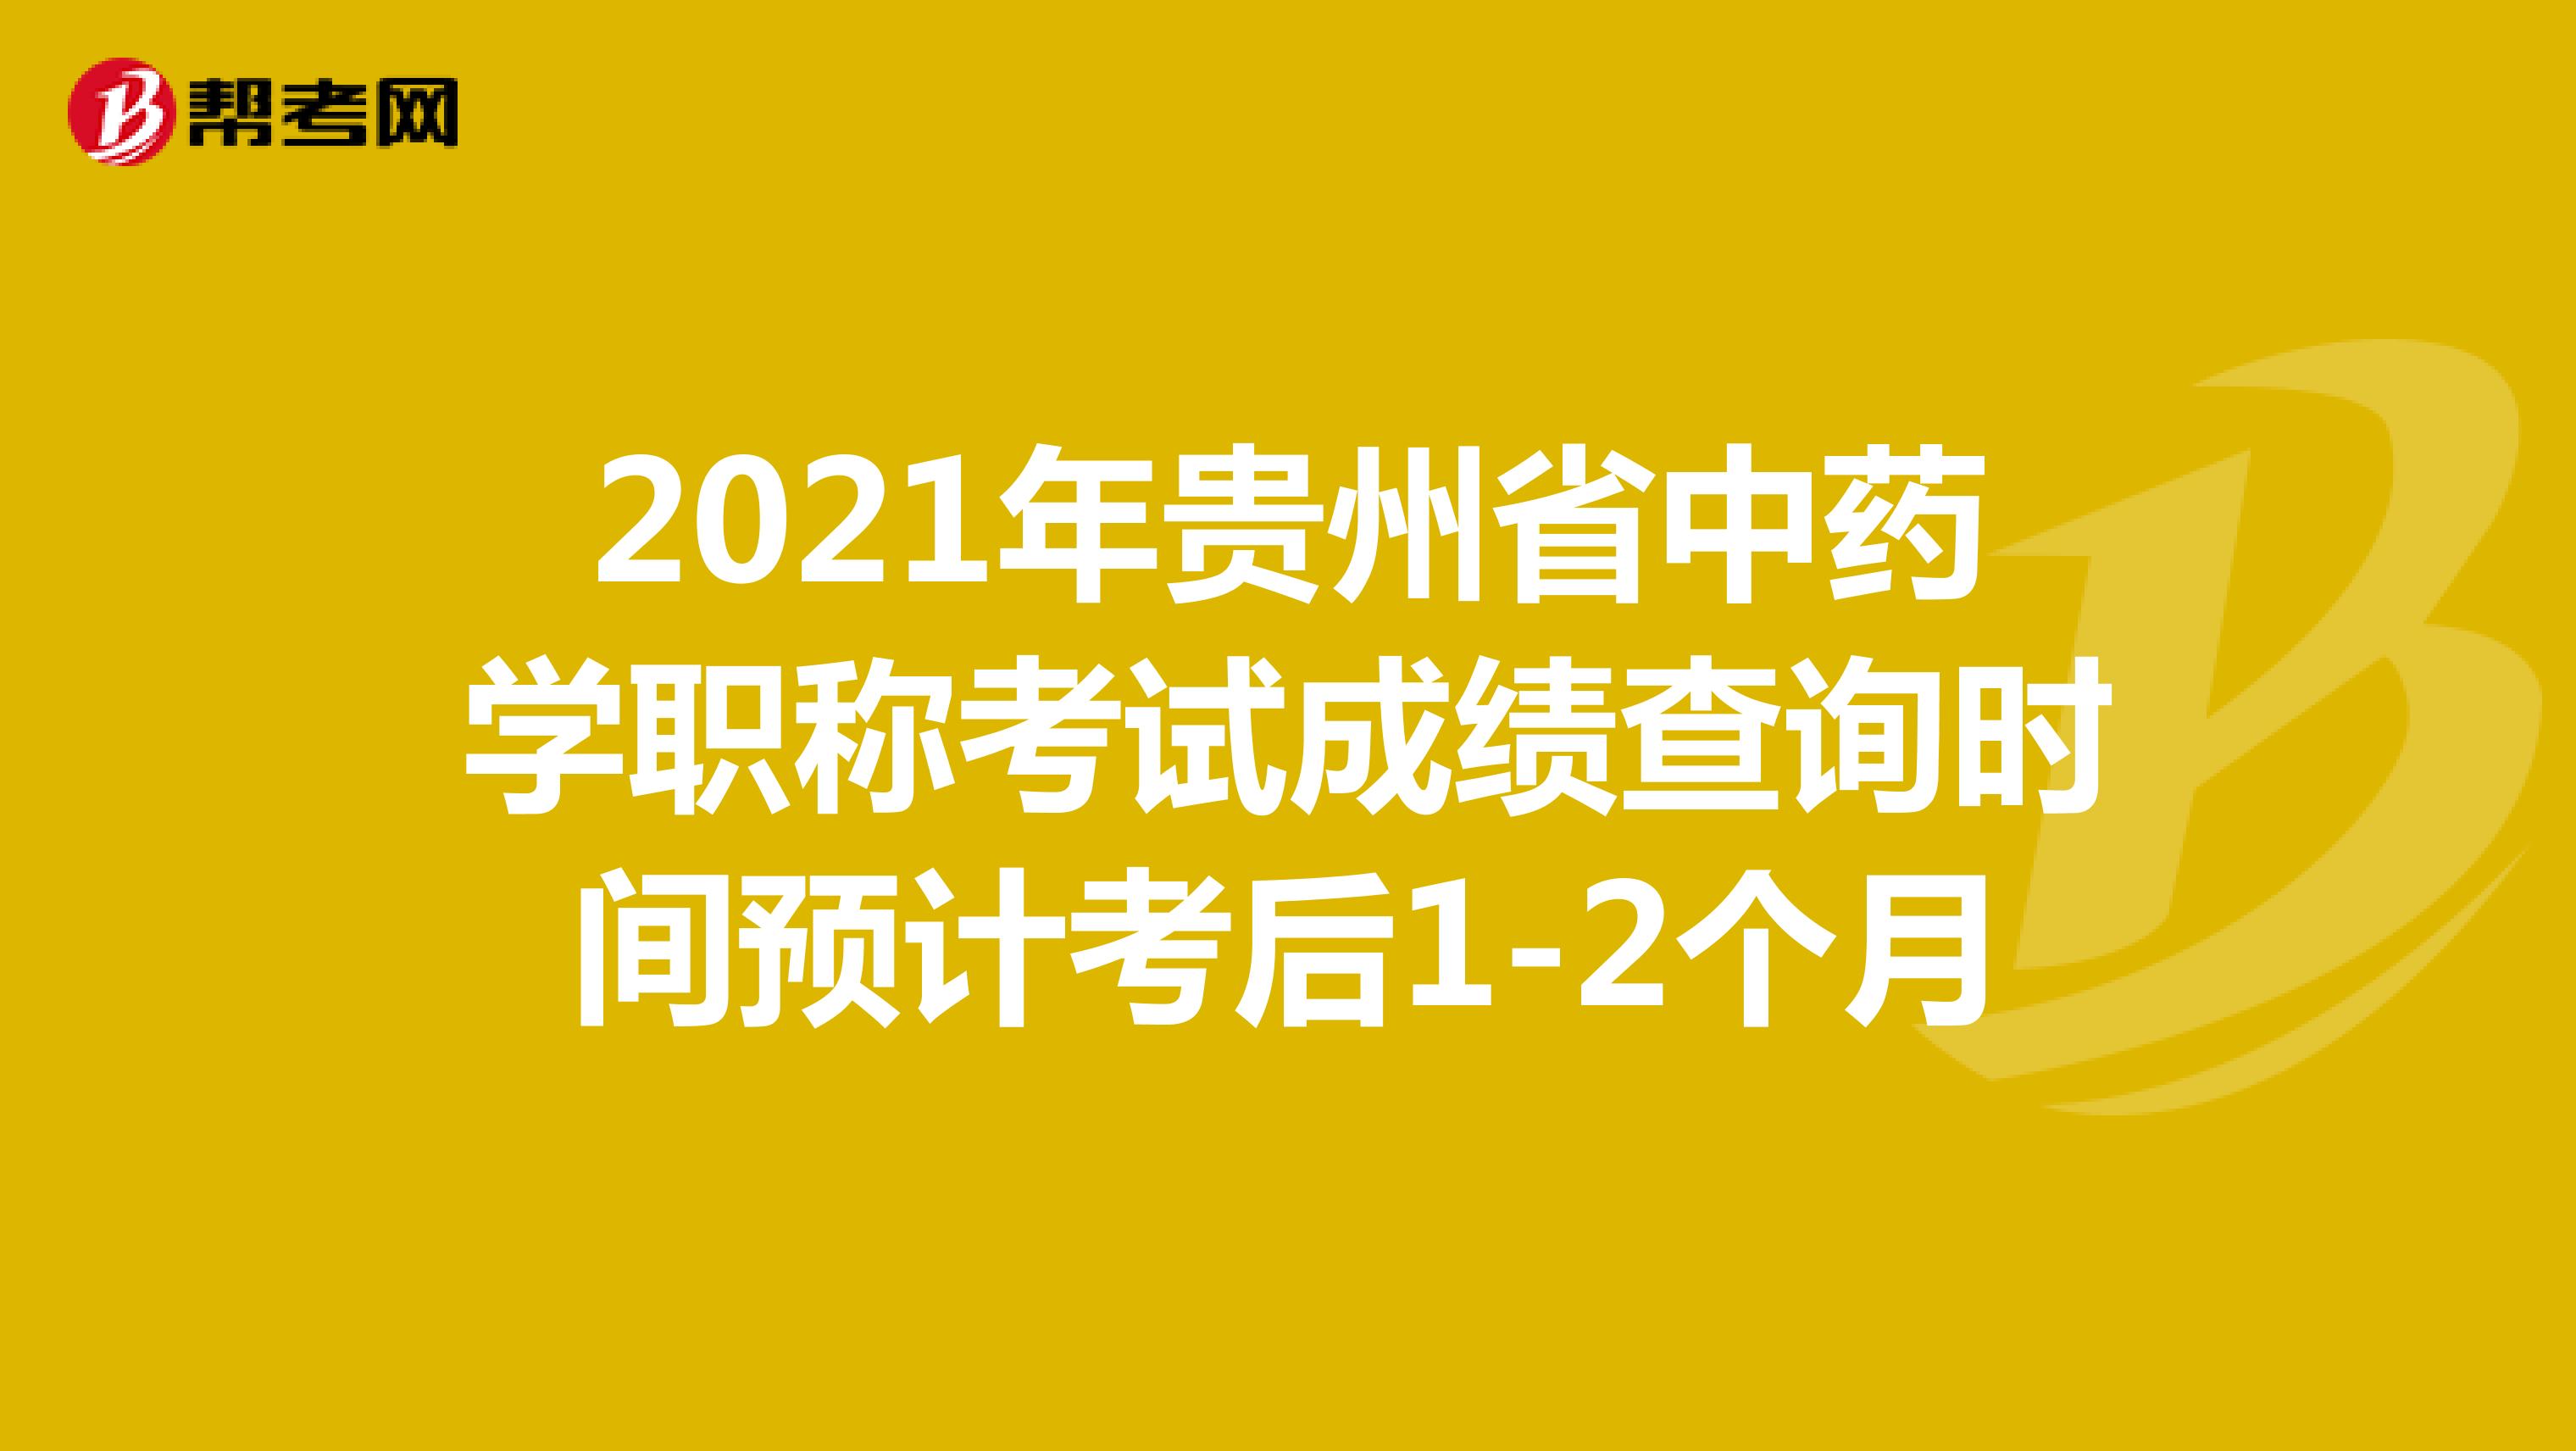 2021年贵州省中药学职称考试成绩查询时间预计考后1-2个月